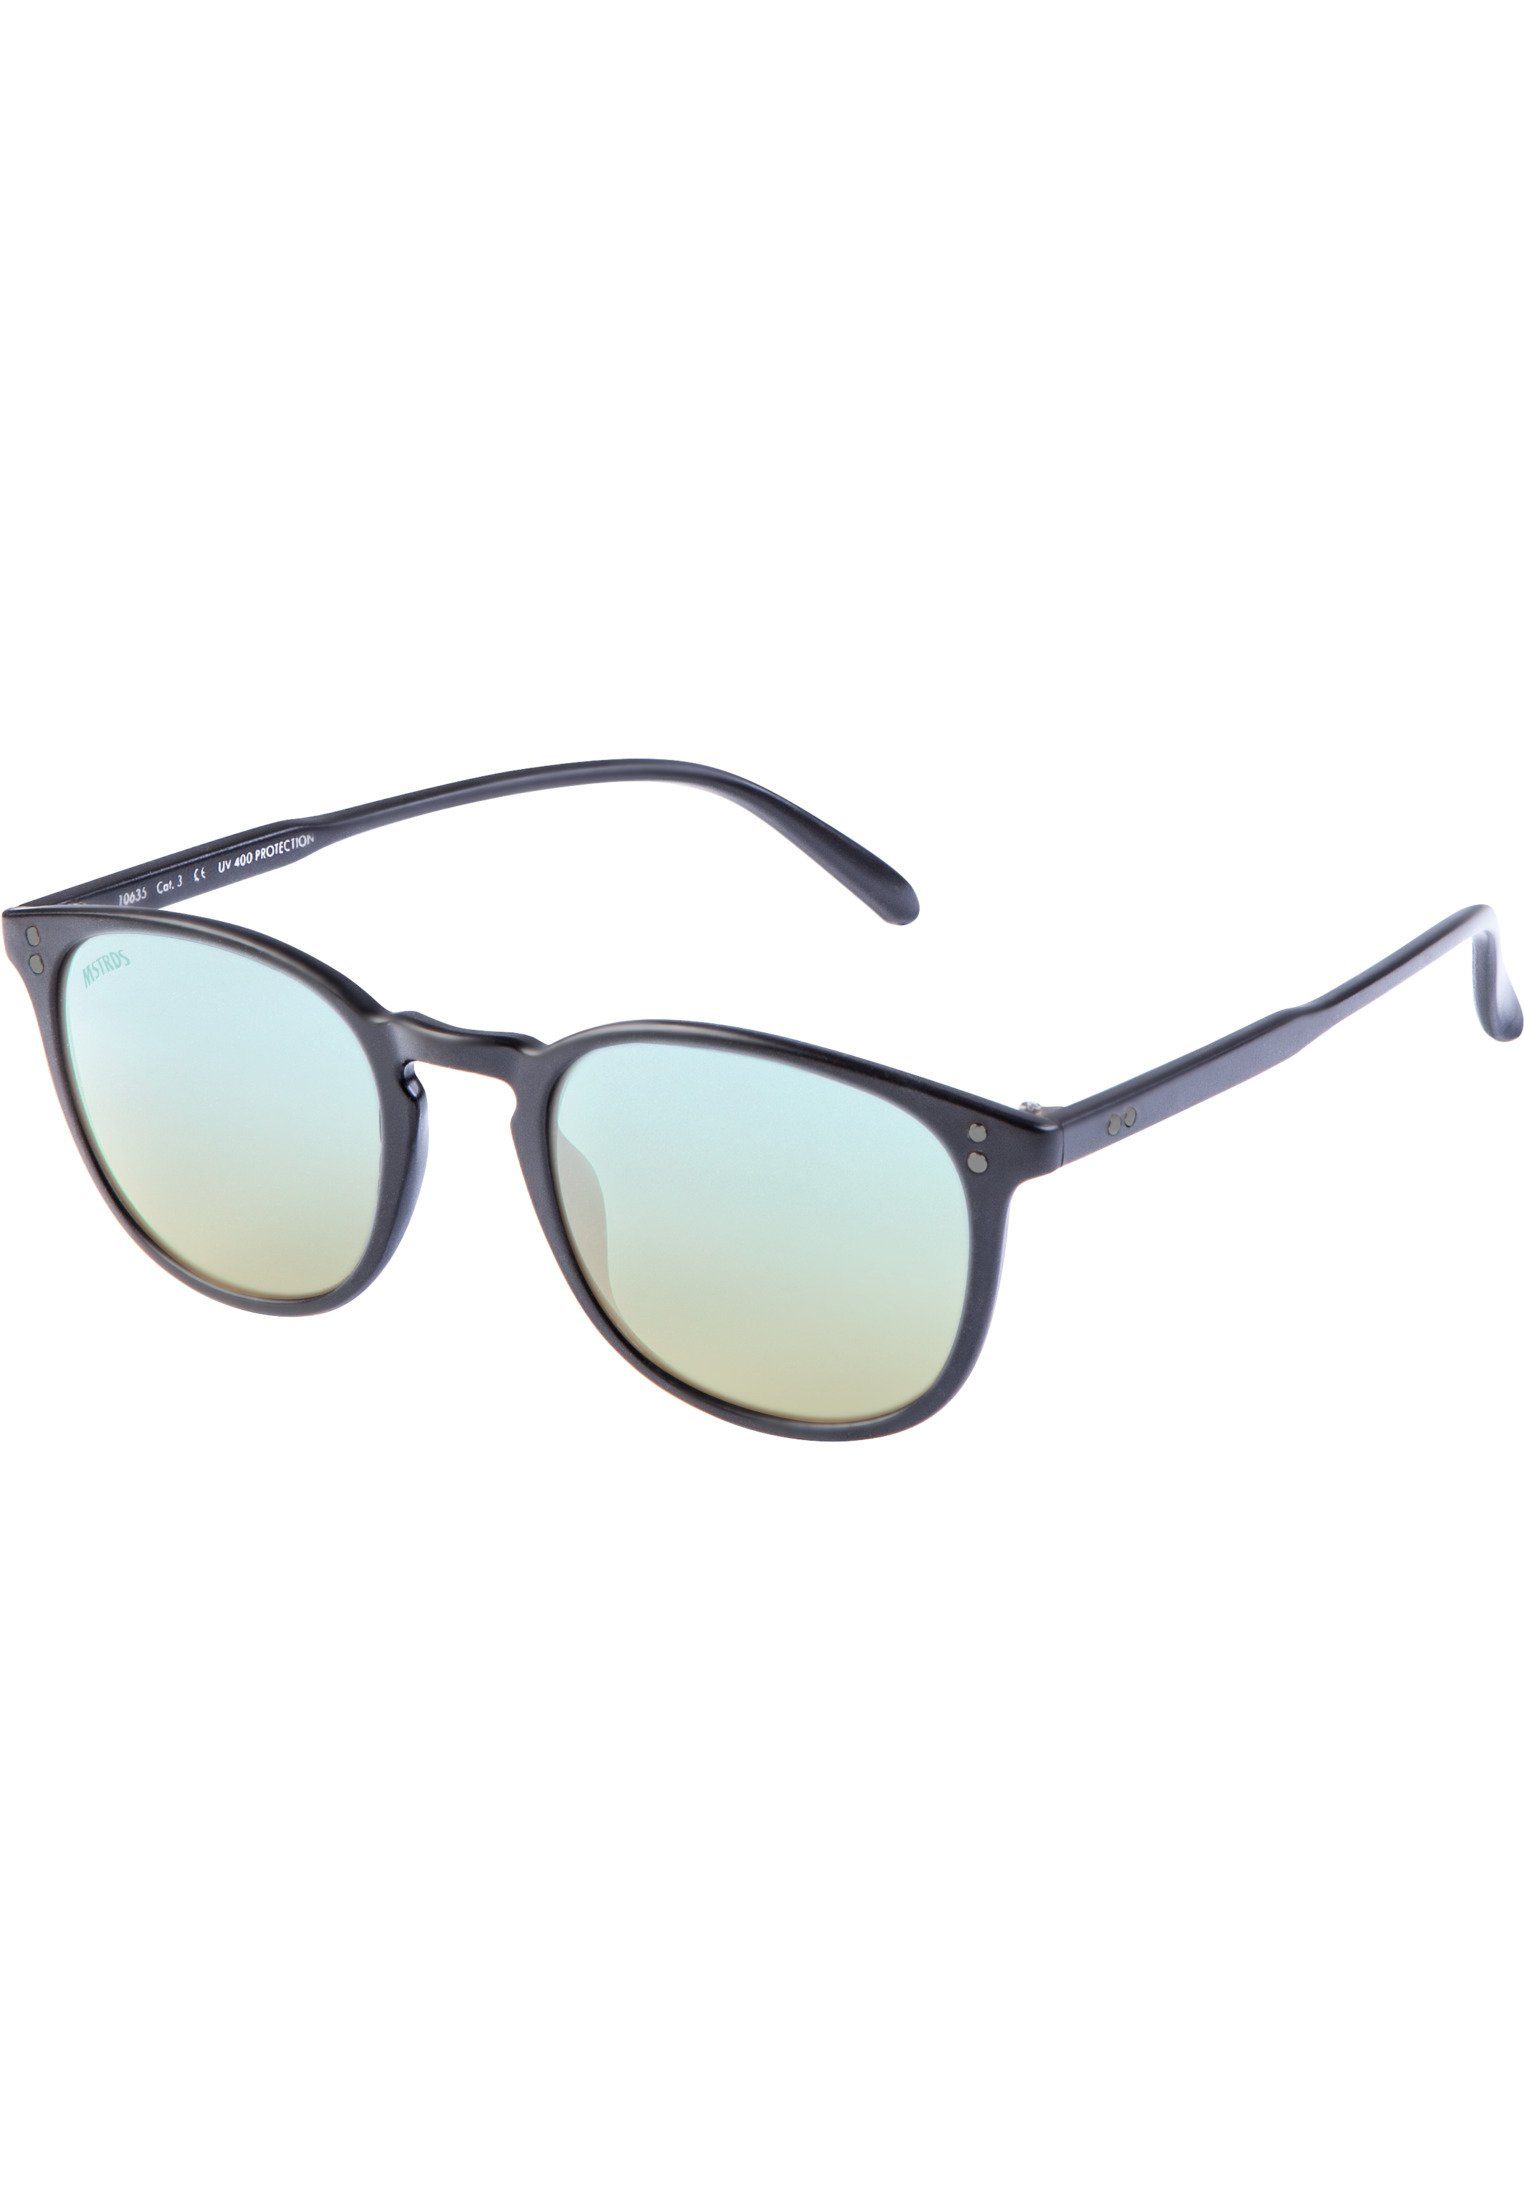 blk/blue Sunglasses Accessoires Sonnenbrille MSTRDS Arthur